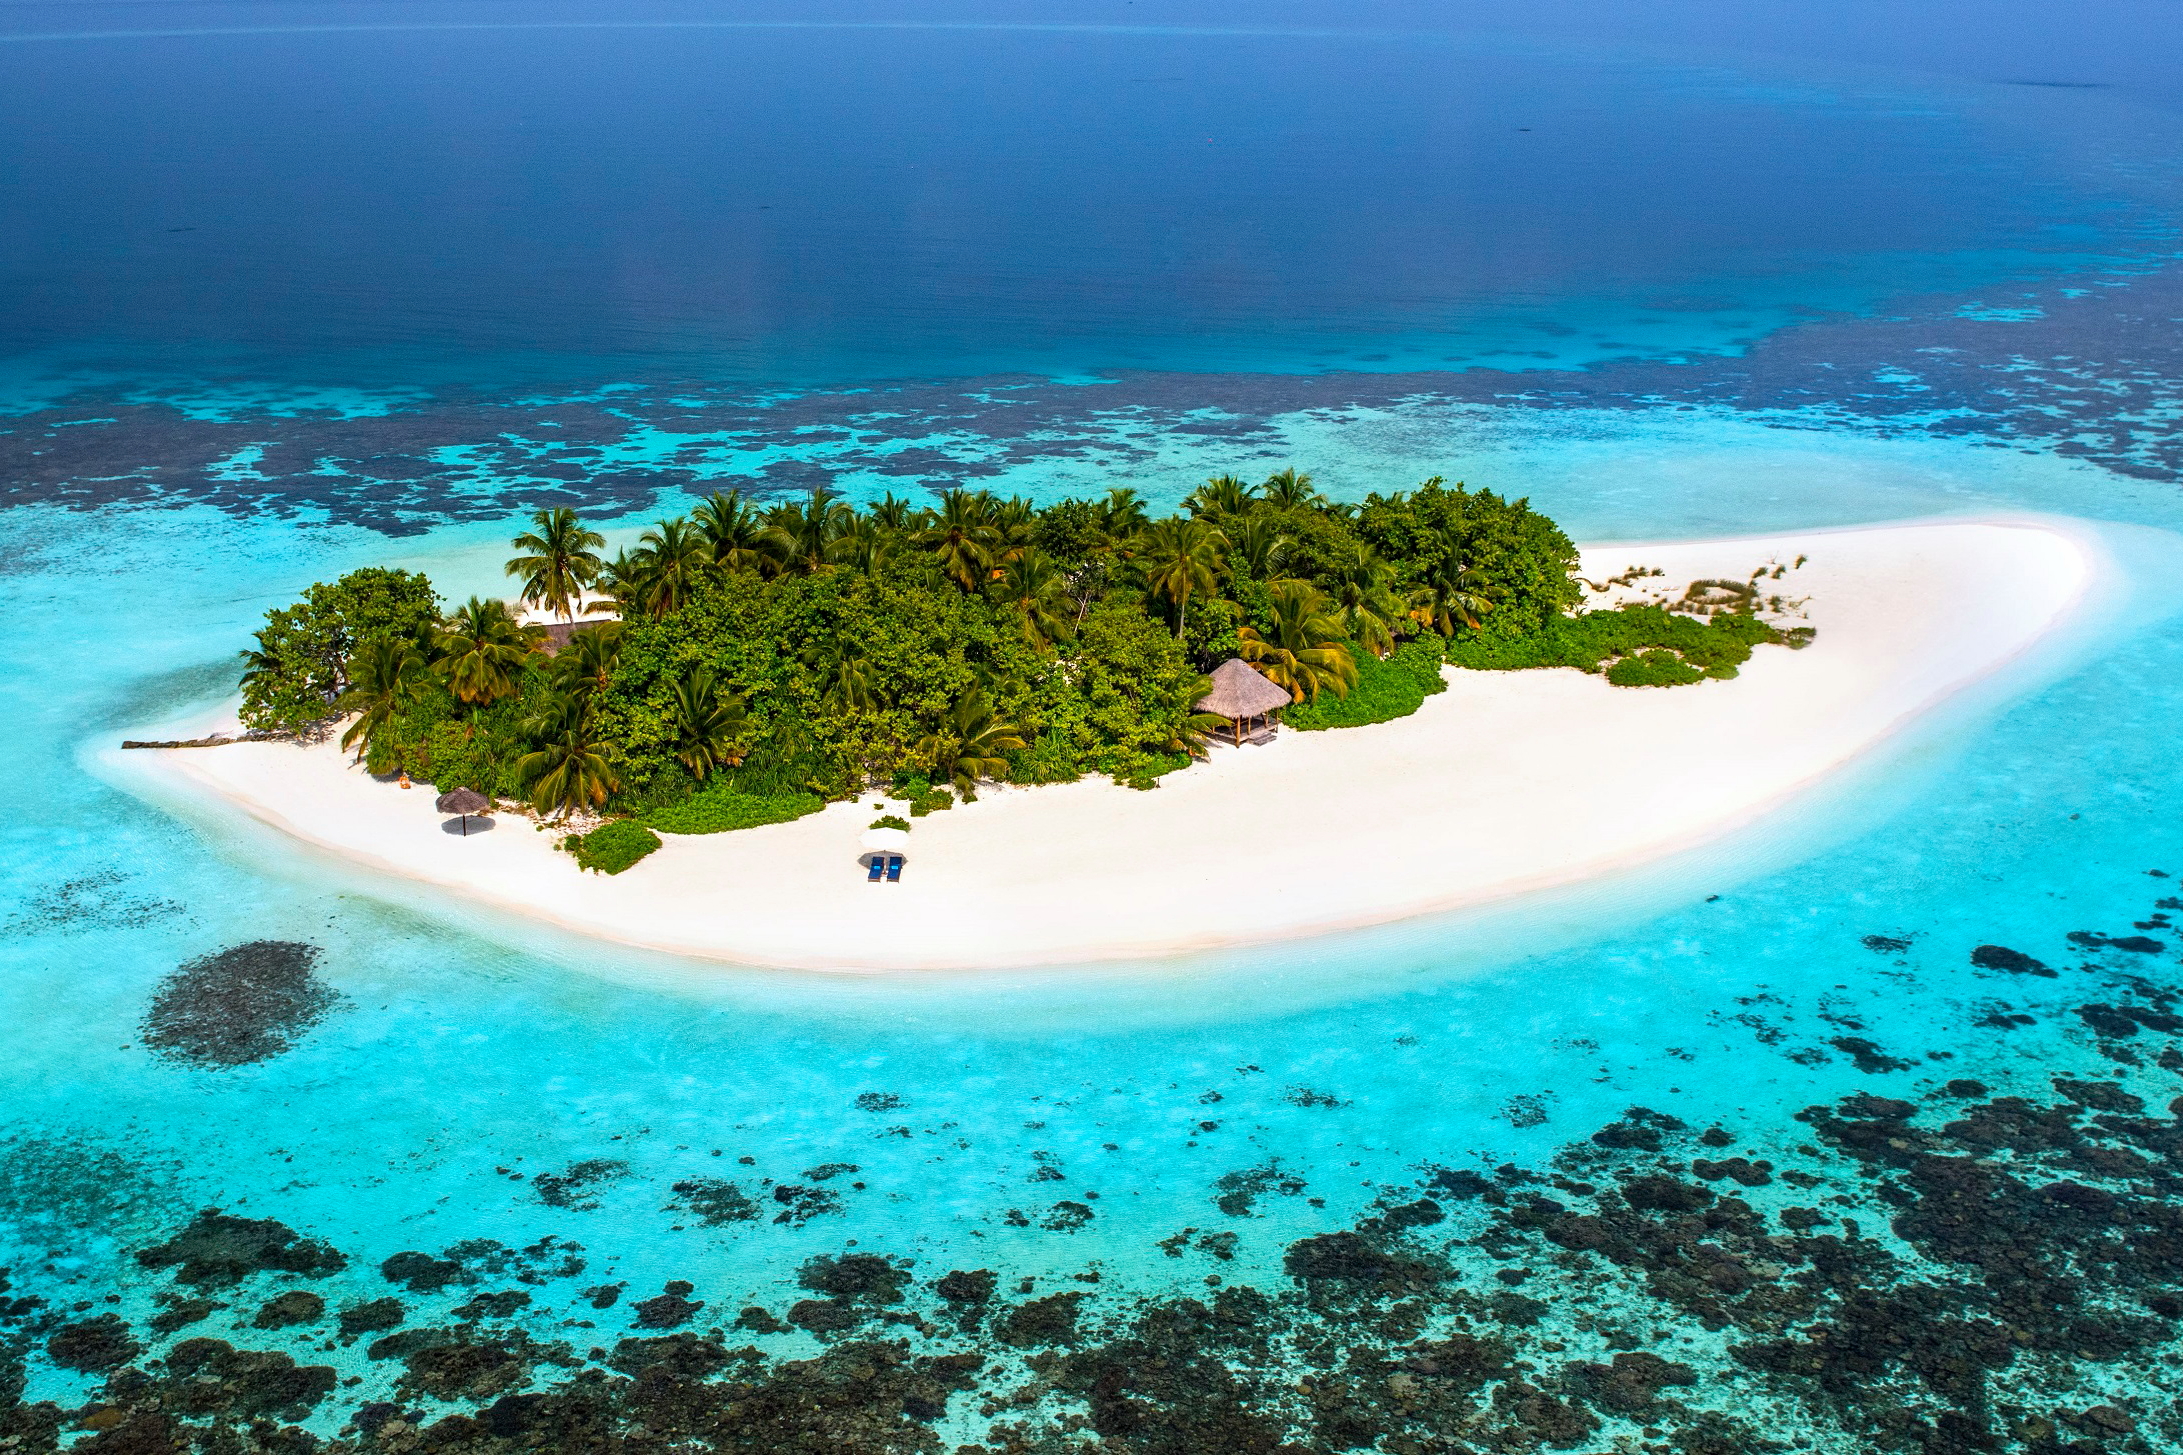 Gaathafushi Island at W Maldives. Click to enlarge.